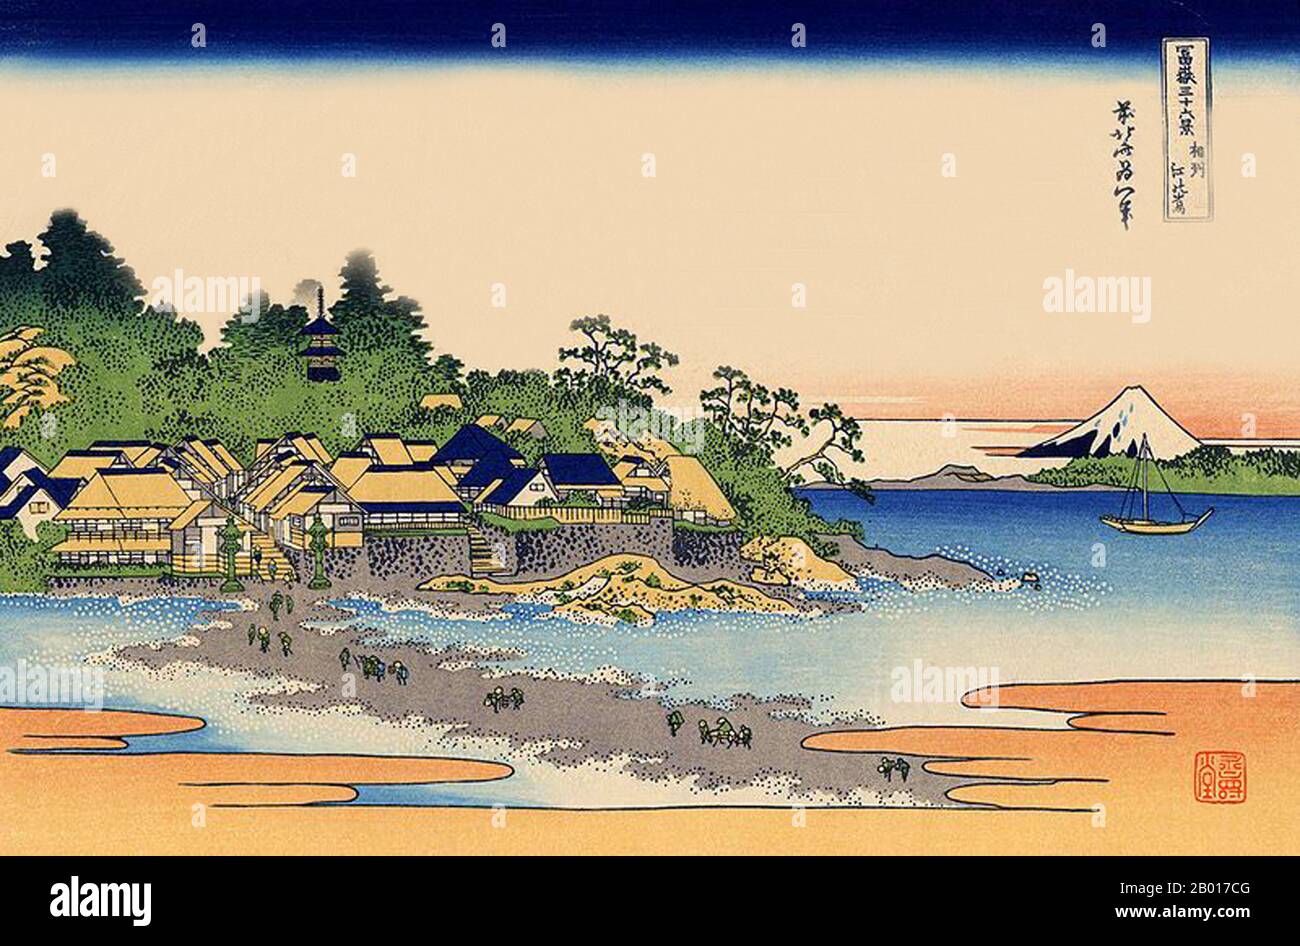 Japan: „Enoshima in der Bucht von Sagami“. Ukiyo-e Holzschnitt aus der Serie ‘Thirty-Six views of Mount Fuji’ von Katsushika Hokusai (31. Oktober 1760 - 10. Mai 1849), 1830. ‘Thirty-Six Views of Mount Fuji’ ist eine Serie von Holzschnitten der japanischen Künstlerin Katsushika Hokusai, die „Sukiyo-e“ ‘. Die Serie zeigt den Fuji in unterschiedlichen Jahreszeiten und Wetterbedingungen an verschiedenen Orten und Entfernungen. Es besteht tatsächlich aus 46 Drucken, die zwischen 1826 und 1833 entstanden sind. Die ersten 36 wurden in die Originalpublikation aufgenommen, und aufgrund ihrer Popularität wurden nach der Originalpublikation 10 weitere hinzugefügt. Stockfoto